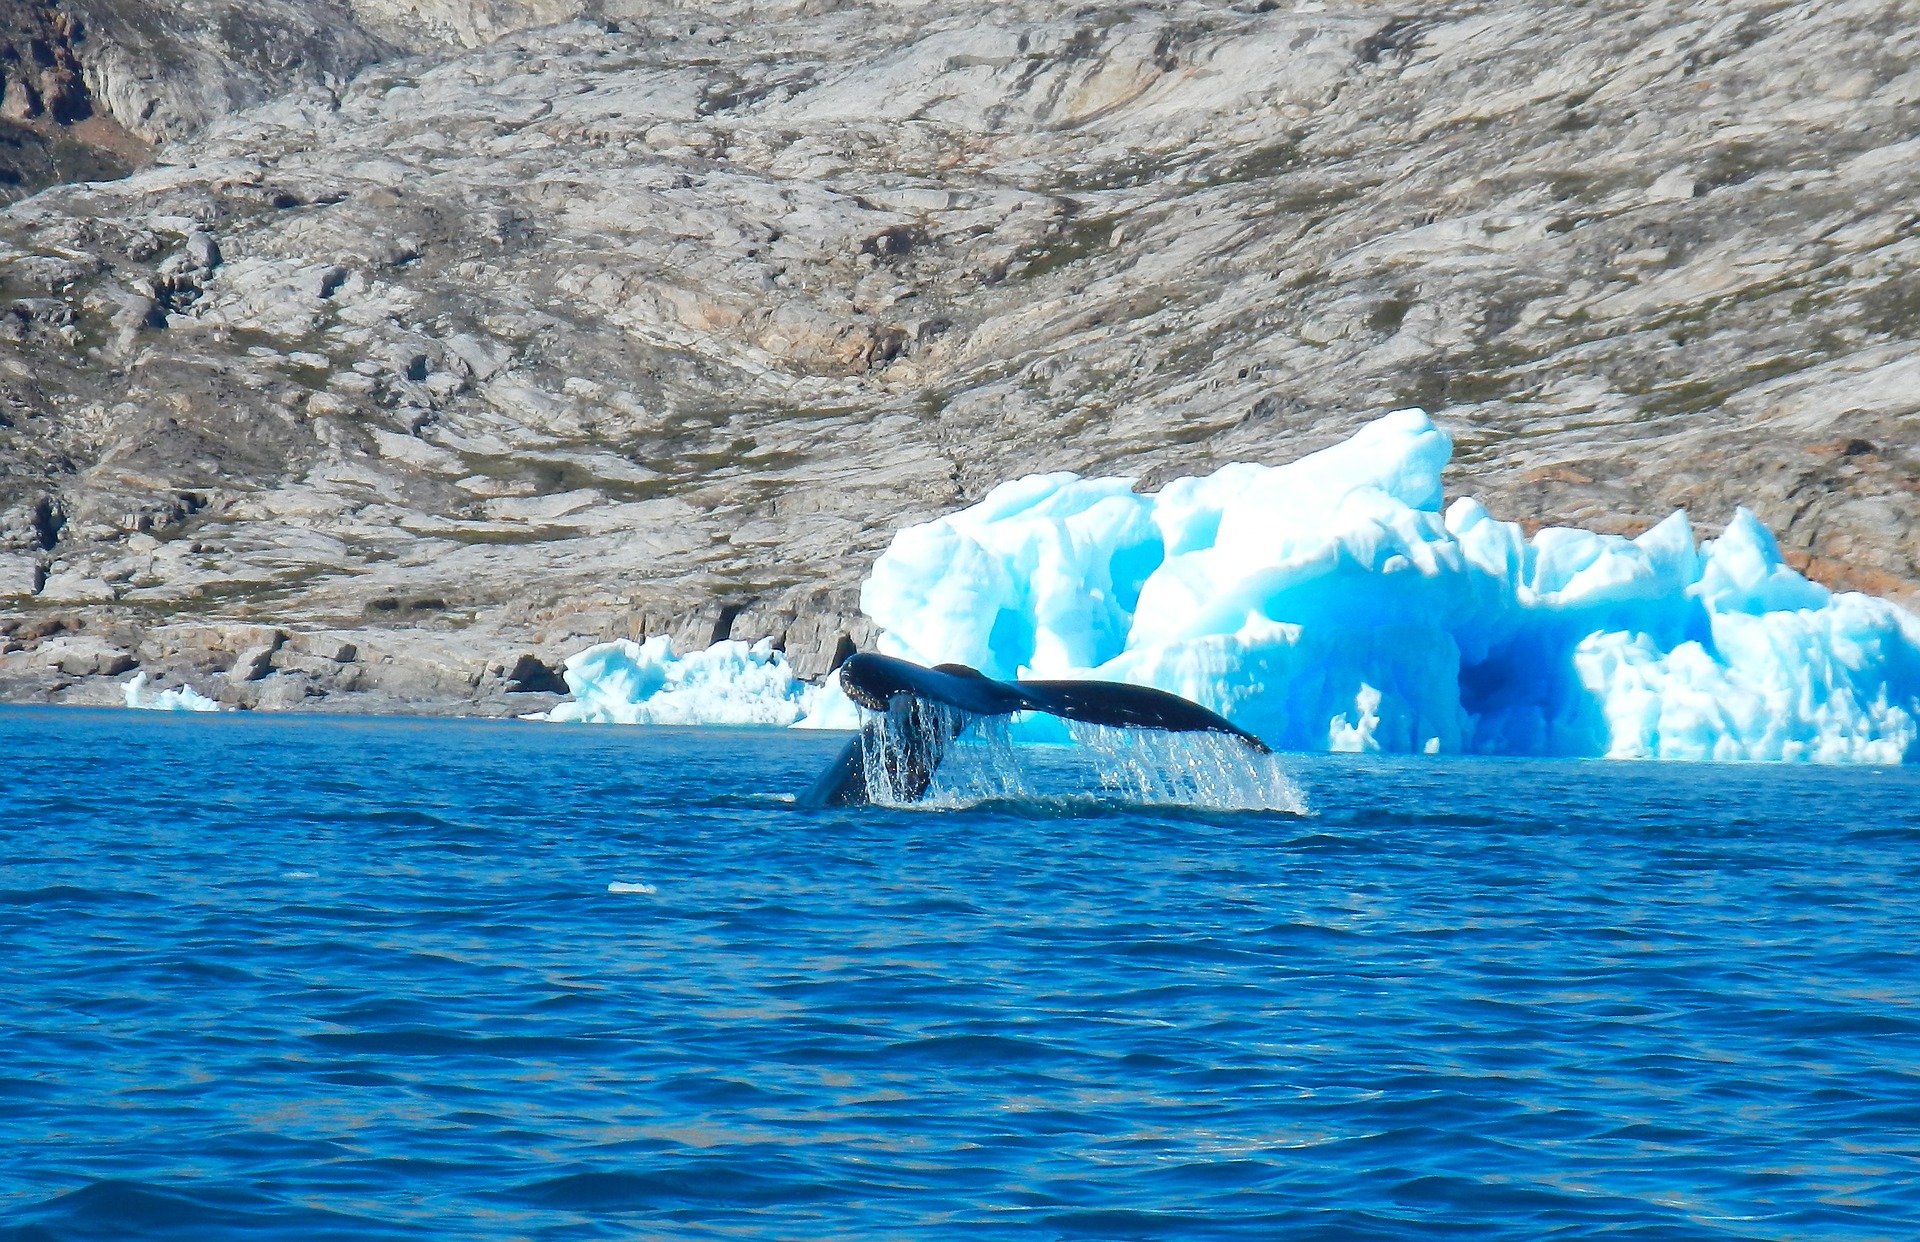 Арктика сегодня: устойчивое развитие, возвращение домой и актуальные расценки на Гренландию